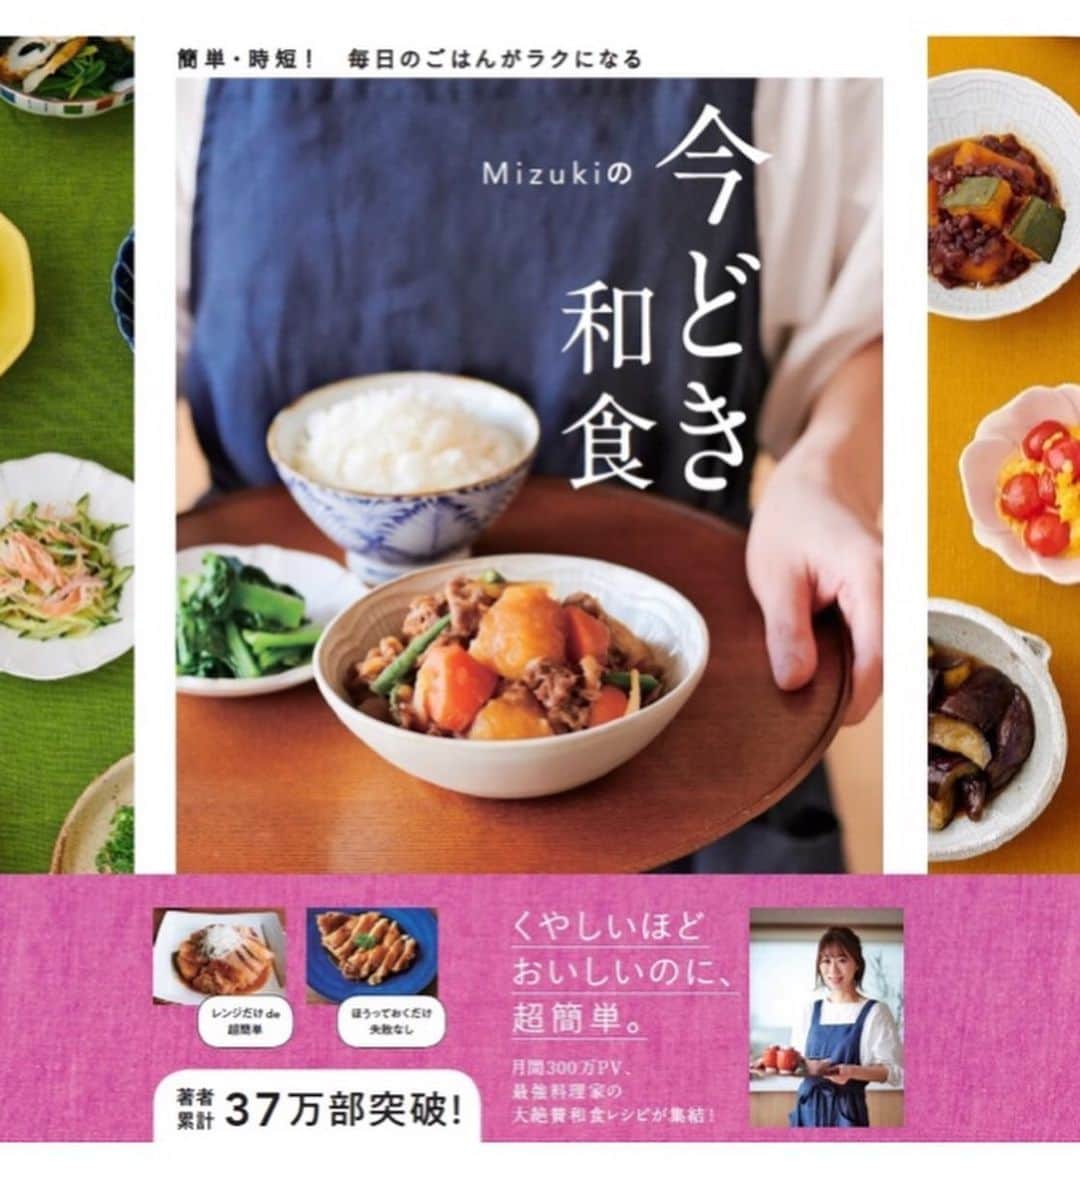 Mizuki【料理ブロガー・簡単レシピ】さんのインスタグラム写真 - (Mizuki【料理ブロガー・簡単レシピ】Instagram)「・﻿ 【レシピ】ーーーーーーーーーーーーー﻿ ♡鶏むね肉de甘辛スティックチキン♡﻿ ーーーーーーーーーーーーーーーーーー﻿ ﻿ ﻿ おはようございます(*^^*)﻿ ﻿ 今日はご紹介させていただくのは﻿ 甘辛スティックチキン♡﻿ 棒状に切った鶏むね肉で作る﻿ 簡単・時短・節約レシピです♩﻿ ﻿ 摘みやすいスティックチキンは﻿ 普段のおかずに、お弁当に﻿ 又、おつまみにもおすすめですよ♡﻿ フライパンひとつでできるので﻿ よかったらお試し下さいね(*^^*)﻿ ﻿ ﻿ ﻿ ーーーーーーーーーーーーーーーーーーーー﻿ 【2人分】﻿ 鶏むね肉...1枚(250g)﻿ ●酒...小1﻿ ●塩こしょう...少々﻿ 片栗粉...適量﻿ サラダ油...大1.5﻿ ☆醤油・酒...各大1.5﻿ ☆砂糖...大1﻿ レタス・白ごま...各適量﻿ ﻿ 1.鶏肉は1cm厚さの削ぎ切りにしてから2cm幅の棒状に切る。●を揉み込み、一切れずつ片栗粉をまぶす。☆は合わせておく。﻿ 2.フライパンにサラダ油を入れて中火で熱し、鶏肉を両面色よく焼く。火が通ったら余分な油を拭き取り、☆を加えて煮からめる。﻿ 3.器にレタスをちぎって盛り、2をのせてごまを振る。﻿ ーーーーーーーーーーーーーーーーーーーー﻿ ﻿ ﻿ 《ポイント》﻿ ♦︎ごはんがすすむしっかり味です♩﻿ ♦︎鶏むね肉の代わりにささみで作ってもOK♩﻿ ﻿ ﻿ ﻿ ﻿ ﻿ ﻿ ＿＿＿＿＿＿＿＿＿＿＿＿＿＿＿＿＿﻿ ＿＿＿＿＿＿＿＿＿＿＿＿＿＿＿＿＿﻿ 🎀発売中🎀﻿ 【#ホットケーキミックスのお菓子 】﻿ ﻿ 一冊まるっとホケミスイーツ♩﻿ 普段のおやつから﻿ 特別な日にも使えるレシピを﻿ この一冊に詰め込みました(*^^*)﻿ ホットケーキミックスを使えば﻿ 簡単に本格的なお菓子が作れますよ♡﻿ ﻿ 🔹ハイライト、ストーリーに﻿ リンクを貼っています🔹﻿ ＿＿＿＿＿＿＿＿＿＿＿＿＿＿＿＿＿﻿ ＿＿＿＿＿＿＿＿＿＿＿＿＿＿＿＿＿﻿ ﻿ ﻿ ﻿ ＿＿＿＿＿＿＿＿＿＿＿＿＿＿＿＿＿＿＿﻿ 📕\ \ 新刊発売中 / /📕﻿ 簡単・時短！ 毎日のごはんがラクになる﻿ ✨🦋 【 #Mizukiの今どき和食 】🦋✨﻿ ＿＿＿＿＿＿＿＿＿＿＿＿＿＿＿＿＿＿＿﻿ ﻿ なるべく少ない材料で﻿ 手間も時間も省きながら﻿ 簡単にできるおいしい和食レシピ♩﻿ 簡単に失敗なくマスターできる一冊で﻿ もっと気軽に、カジュアルに﻿ 和食を楽しんで下さいね(*^^*)﻿ ﻿ ﻿ ーーー ⭐️PART.1 メインおかず ⭐️ーーー﻿ 素材別にレシピをご紹介しています♩﻿ 和食の定番から新定番まで﻿ どれも押さえておきたいメニューばかり。﻿ 肉じゃがはフライパンで！焼き豚はレンジで！﻿ ぶり大根は切り身を使って手軽に作ります♩﻿ ﻿ ーーー ☘️PART.2 サブおかず ☘️ーーー﻿ 年中手に入るお手頃野菜と﻿ 乾物や大豆、こんにゃくなどを使った﻿ 副菜レシピをたっぷり掲載！！﻿ 普段SNSではメインおかずばかりなので﻿ 本では副菜にも力を入れています(*^^*)﻿ ﻿ ーーー 🌸PART.3 ごはんと汁物 🌸ーーー﻿ ささっと作れる丼と麺、﻿ みんなで食べたいいなり寿司や﻿ 手巻きごはんもご紹介！﻿ 複数の炊き込みごはんと﻿ 味噌汁&和風スープも盛りだくさん！﻿ ﻿ ﻿ 各レシピのポイントは﻿ 【写真付きで丁寧に解説】﻿ 副菜レシピもたっぷりなので﻿ 【メインページに副菜メモもつけました】﻿ ＊このメインにはこの副菜が合いますよ〜﻿ という献立の提案です(*^^*)﻿ 【その他コラムも充実】﻿ 全127品中ほぼ全て﻿ 【本だけのレシピです！】﻿ ﻿ ＿＿＿＿＿＿＿＿＿＿＿＿＿＿＿＿＿＿＿﻿ ﻿ ⭐️ストーリー、ハイライト、プロフ画面に﻿ 本のURLを貼らせていただいております♩﻿ →(@mizuki_31cafe )﻿ ﻿ ＿＿＿＿＿＿＿＿＿＿＿＿＿＿＿＿＿＿＿﻿ ﻿ ﻿ ﻿ ﻿ #鶏むね肉#甘辛#節約おかず#スティックチキン#お弁当#うちで過ごそう#おうち時間#Mizuki#簡単レシピ#時短レシピ#節約レシピ#料理#レシピ#フーディーテーブル#おうちごはん#おうちカフェ#デリスタグラマー#料理好きな人と繋がりたい#料理ブロガー#おうちごはんlover#foodpic#follow#cooking#recipe#lin_stagrammer#stayhome#鶏むね肉で甘辛スティックチキンm」4月18日 8時07分 - mizuki_31cafe